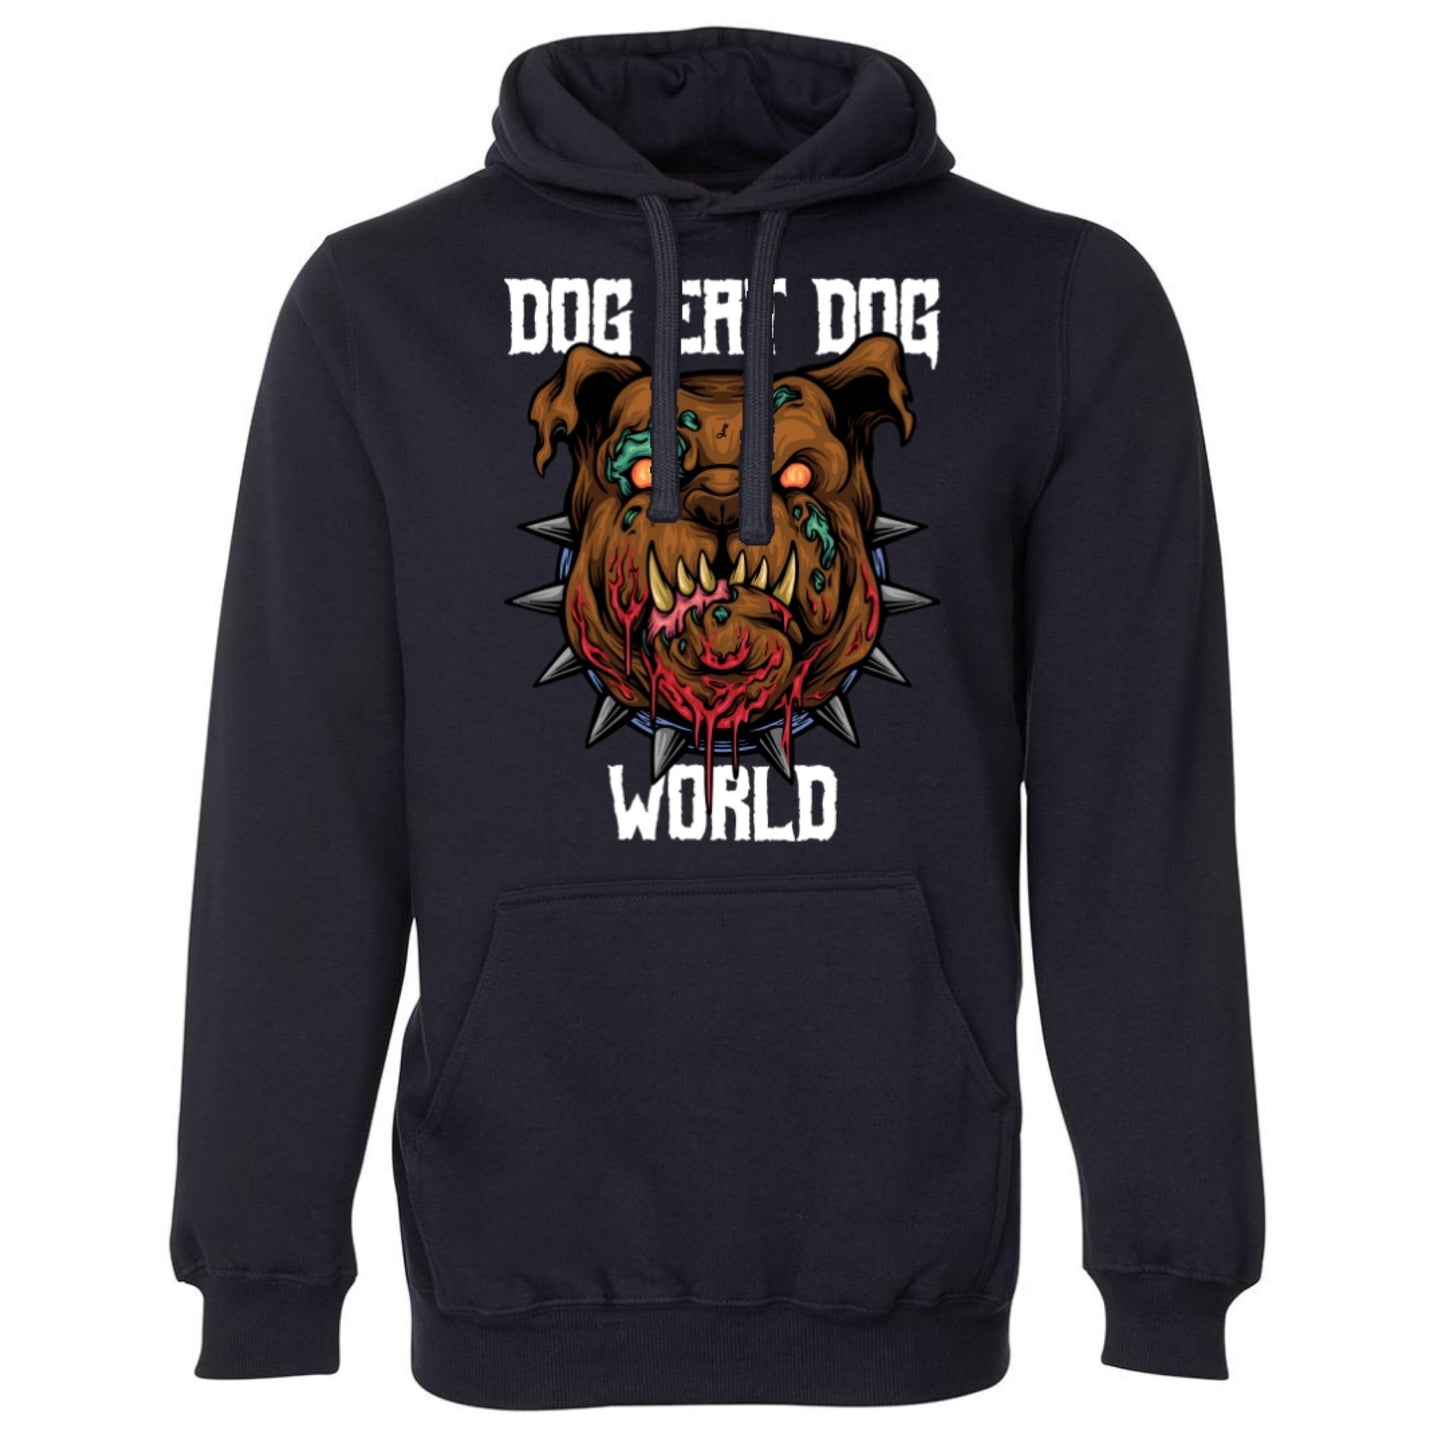 dog eat dog world [hoodie] - ovrsze